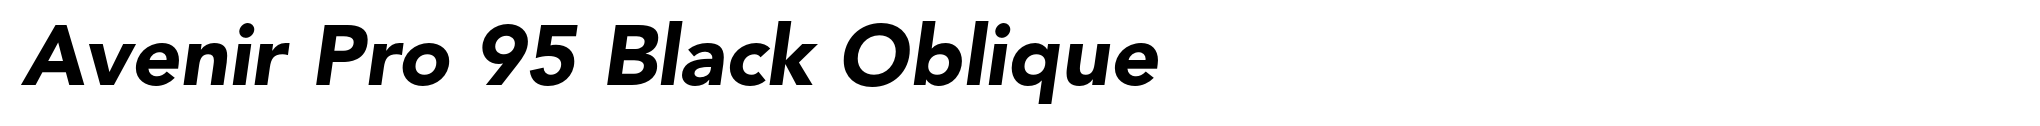 Avenir Pro 95 Black Oblique image